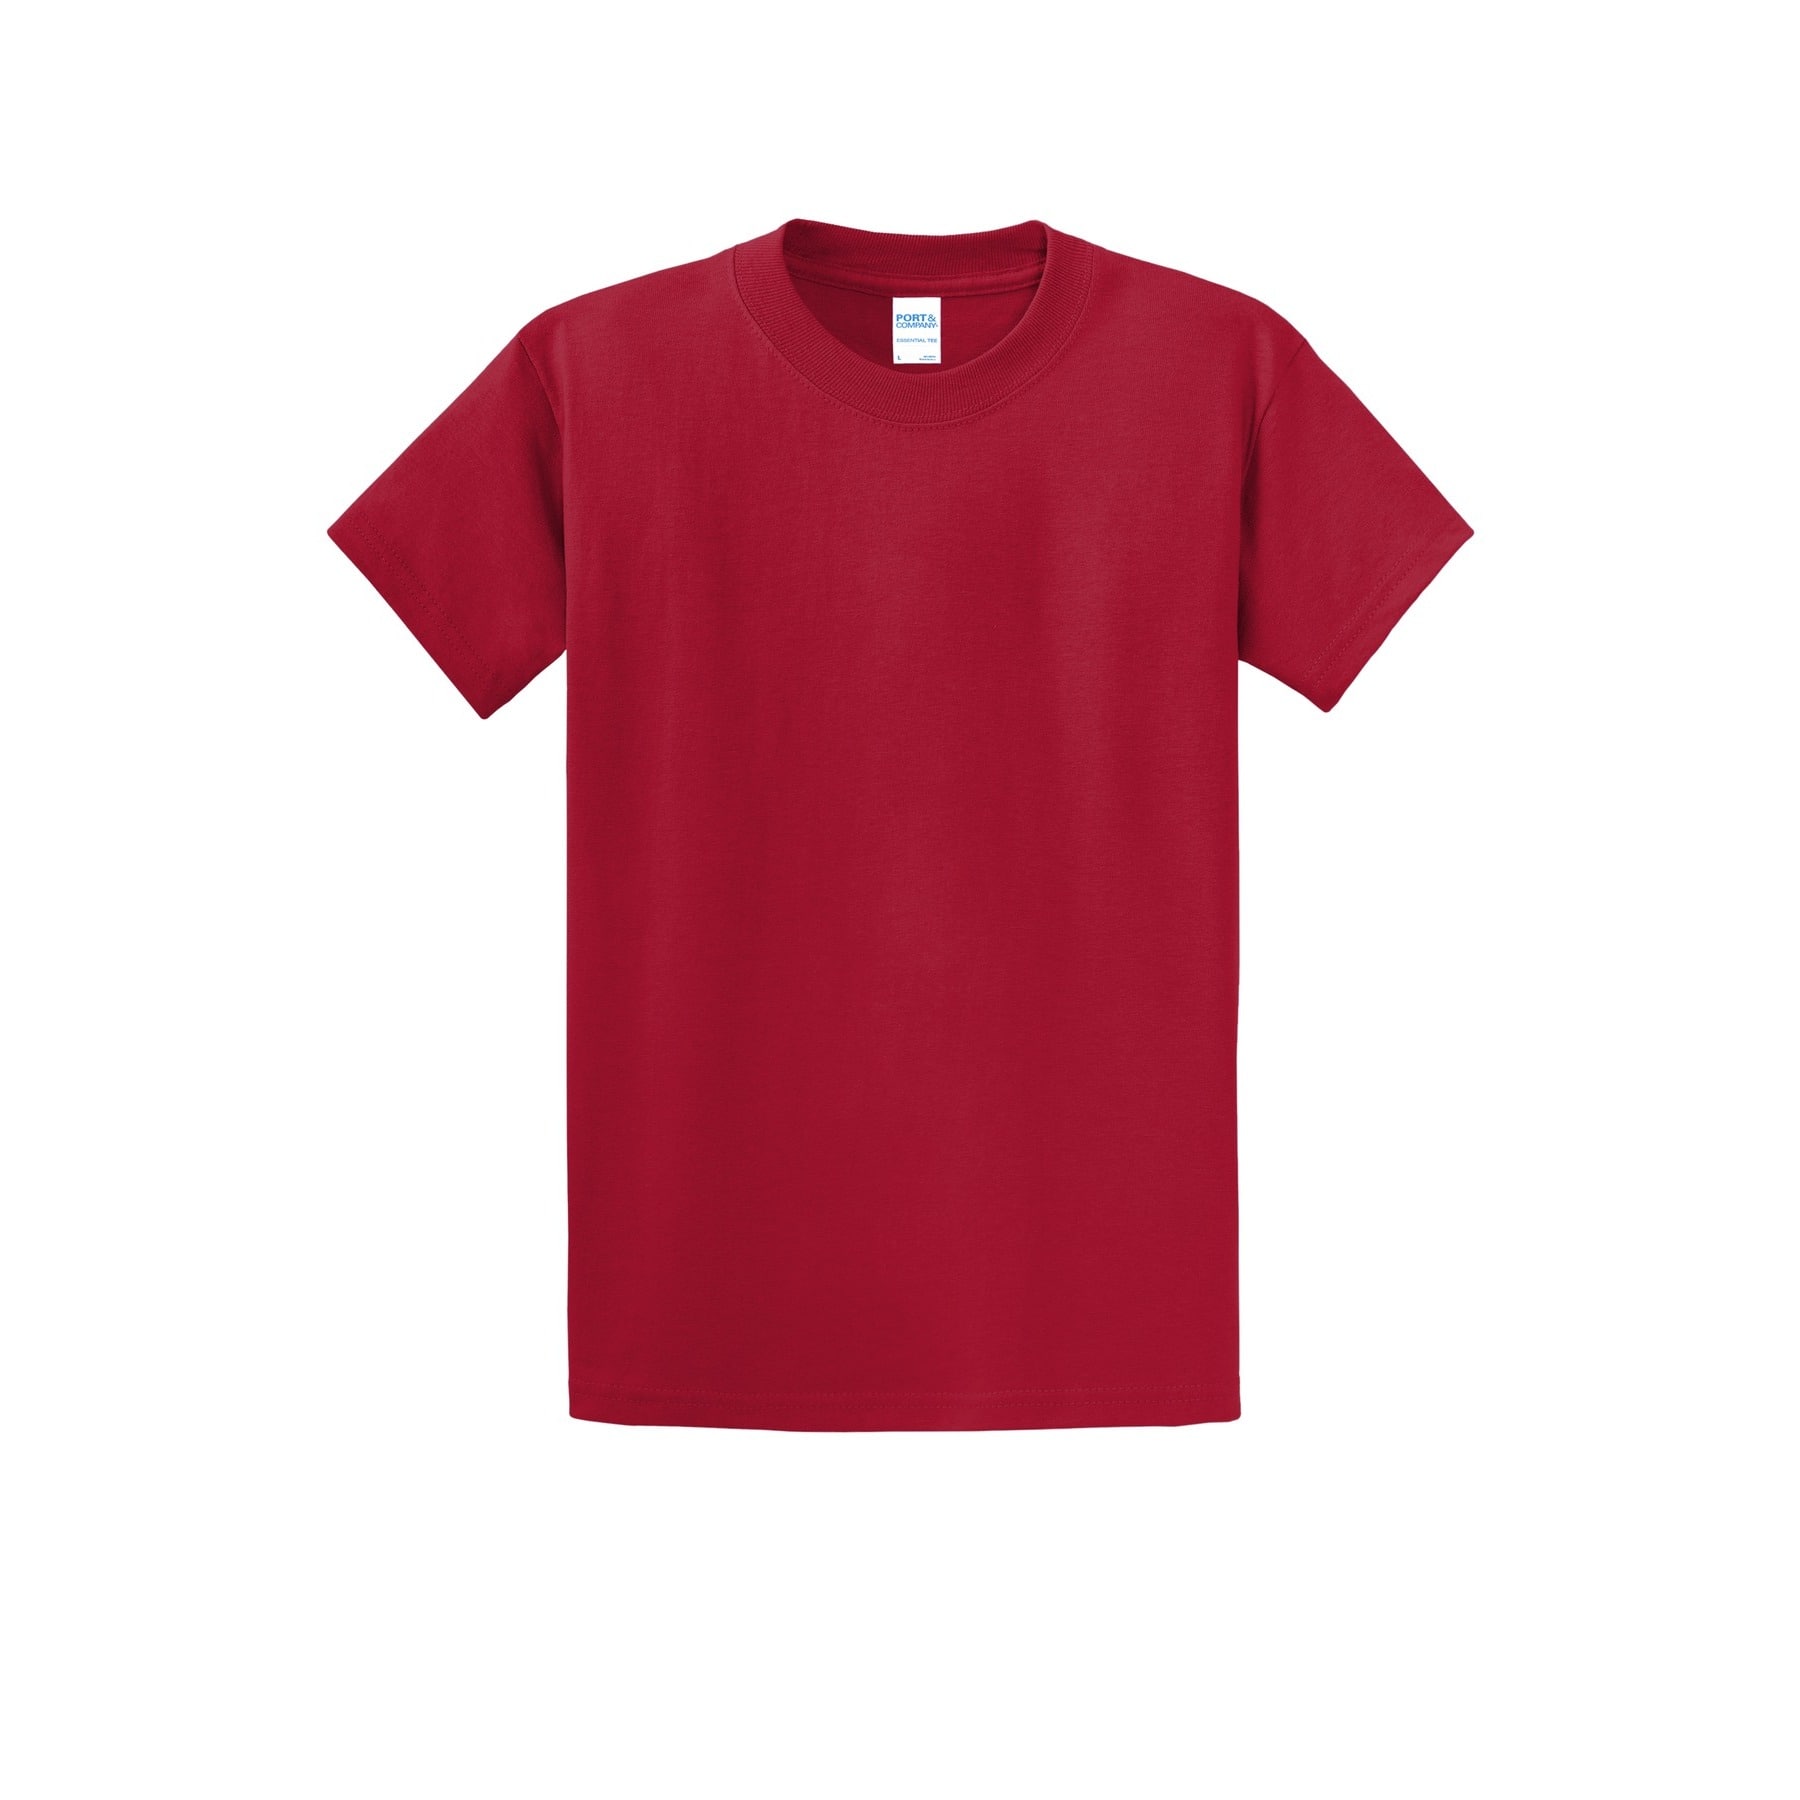 jeg er syg omhyggelig Hvad er der galt Port & Company® Essential Red & Pink Shades Adult T-Shirt | Michaels